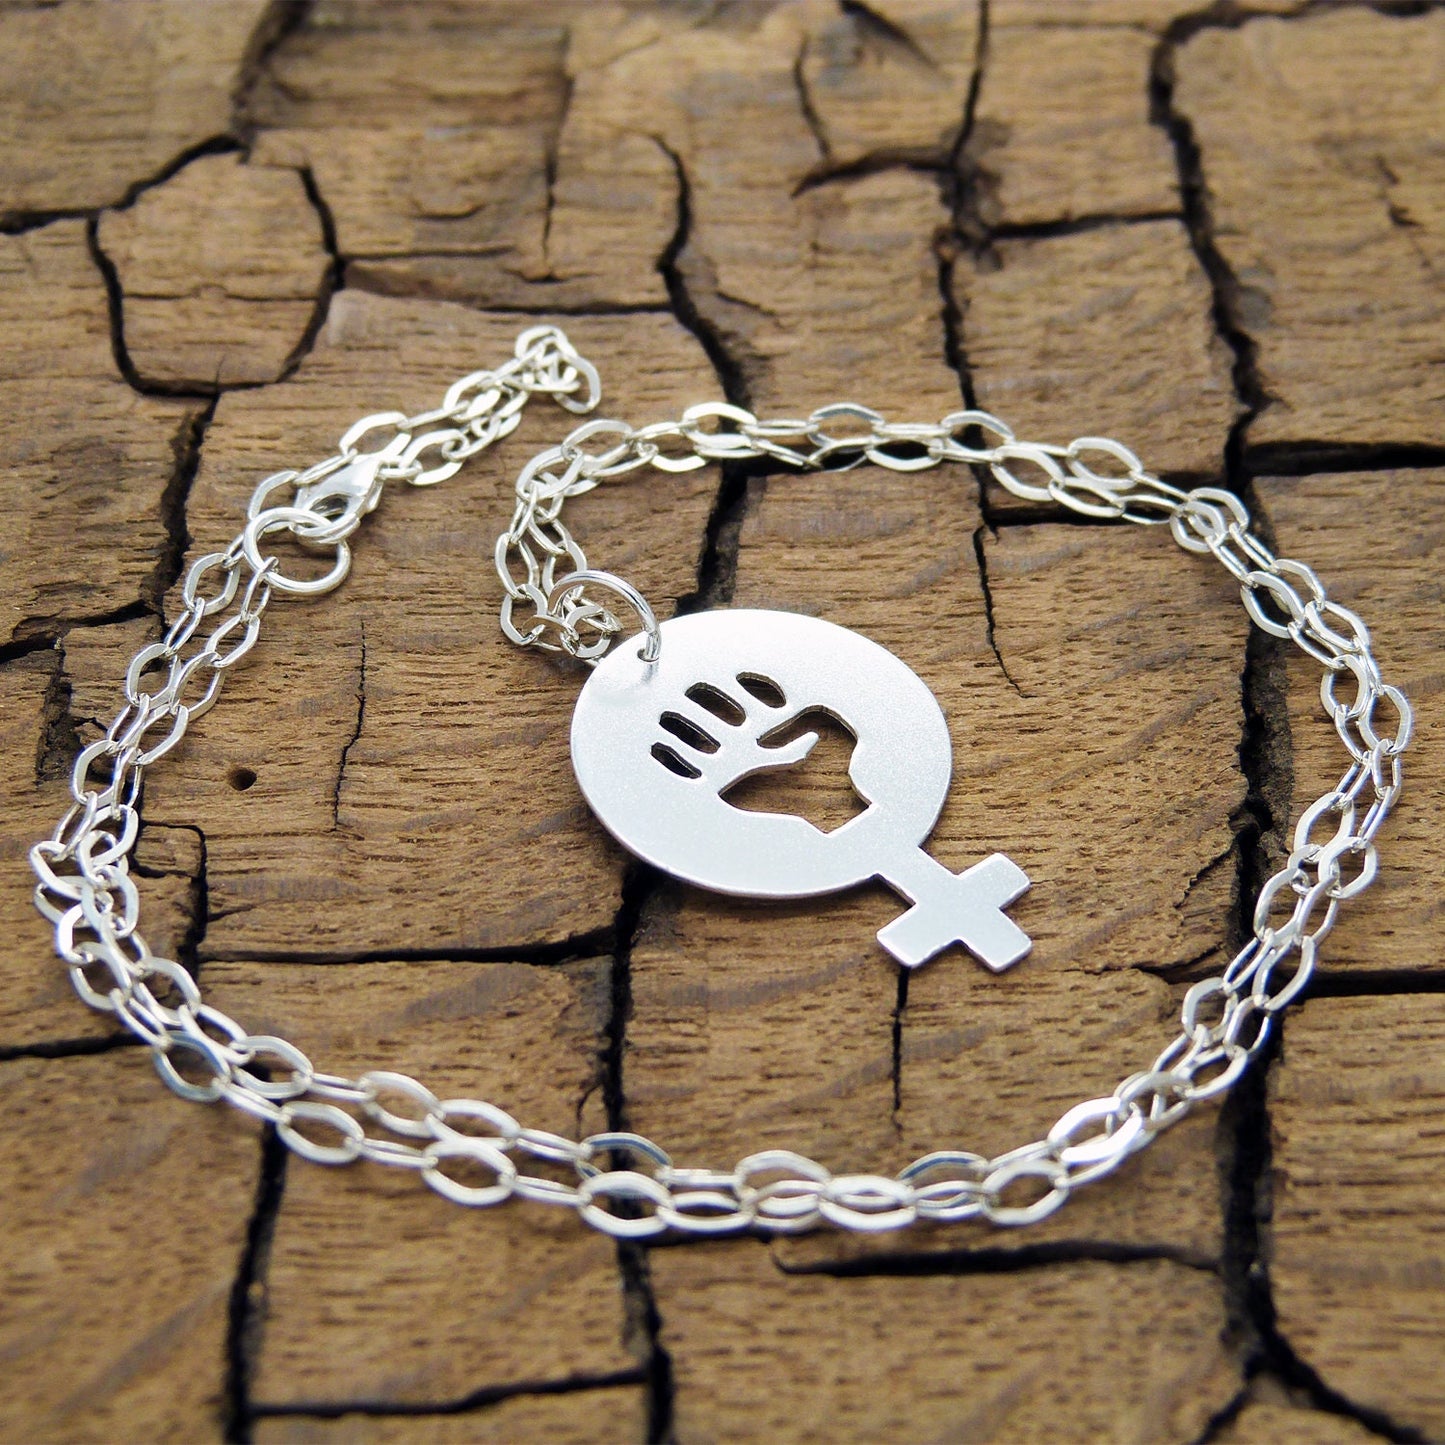 Women Power 02 pendant in 925 silver